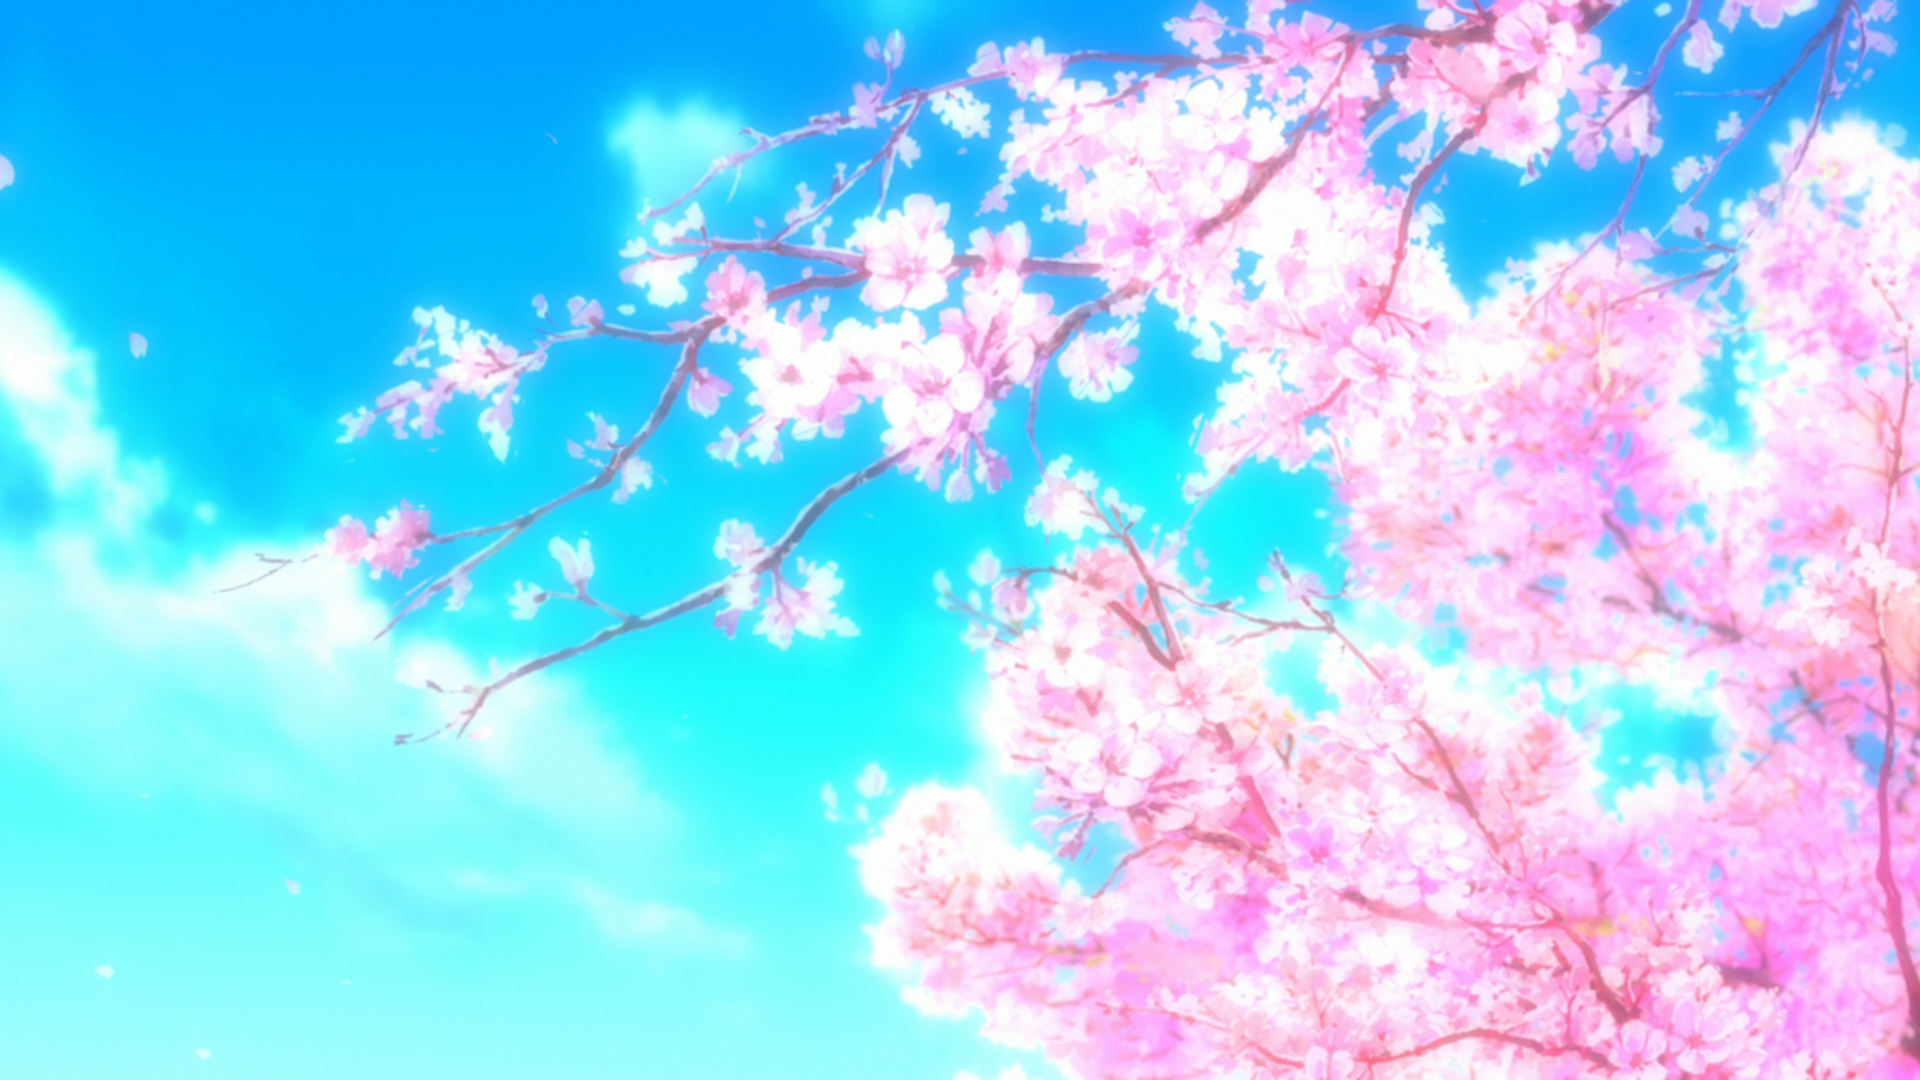 Wallpaper  anime school uniform Vocaloid Hatsune Miku cherry blossom  estate tree flower home 1920x1080 px 1920x1080  wallpaperUp  717849  HD  Wallpapers  WallHere